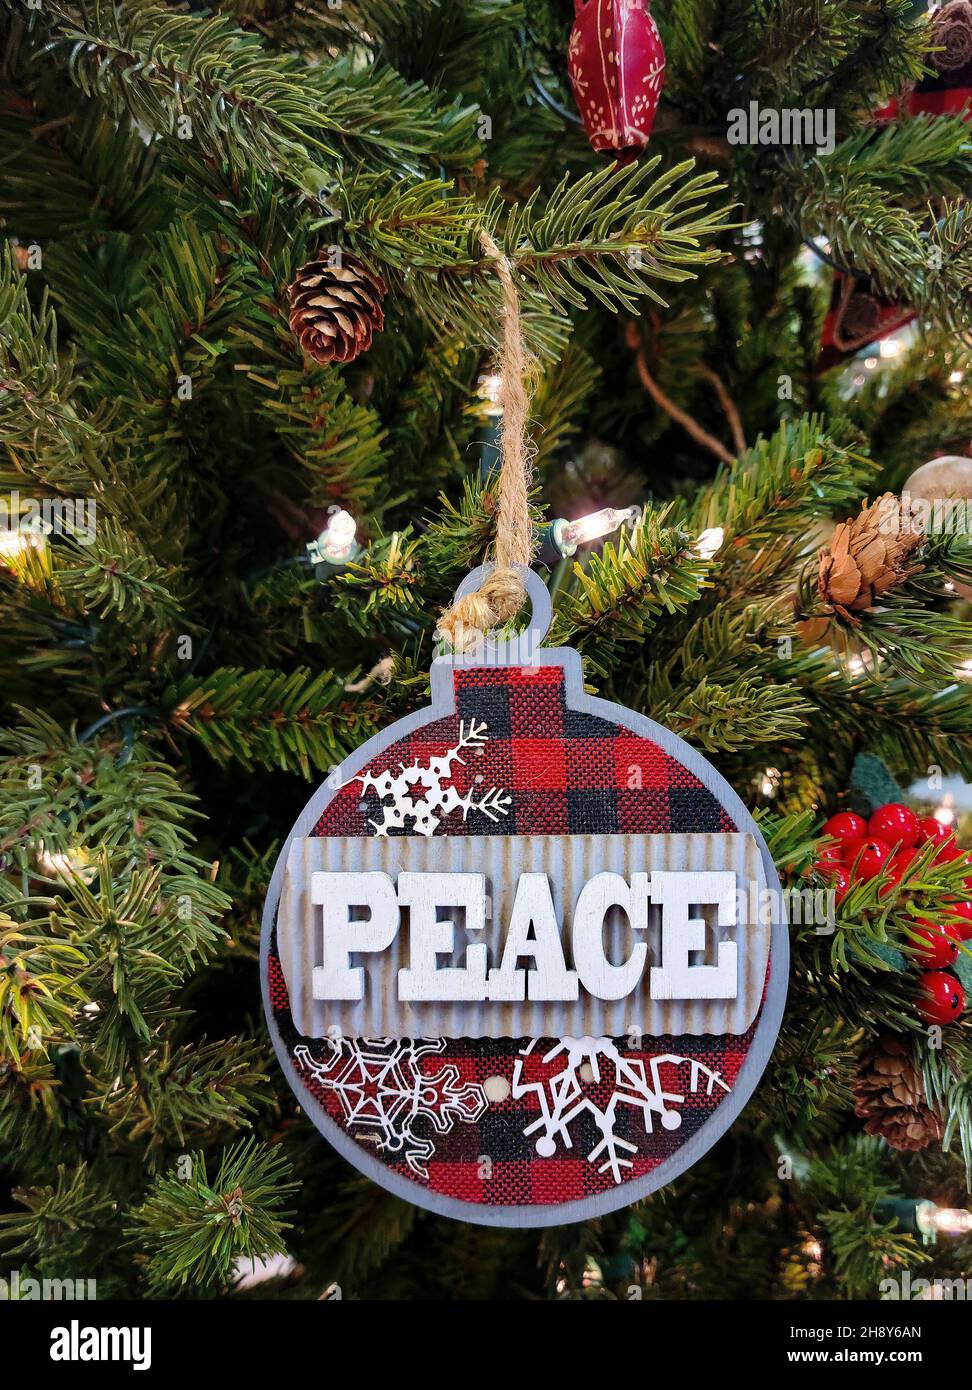 Nahaufnahme des Weihnachtsfriedens Ornaments auf einer Kiefer mit Weihnachtsbeleuchtung Stockfoto